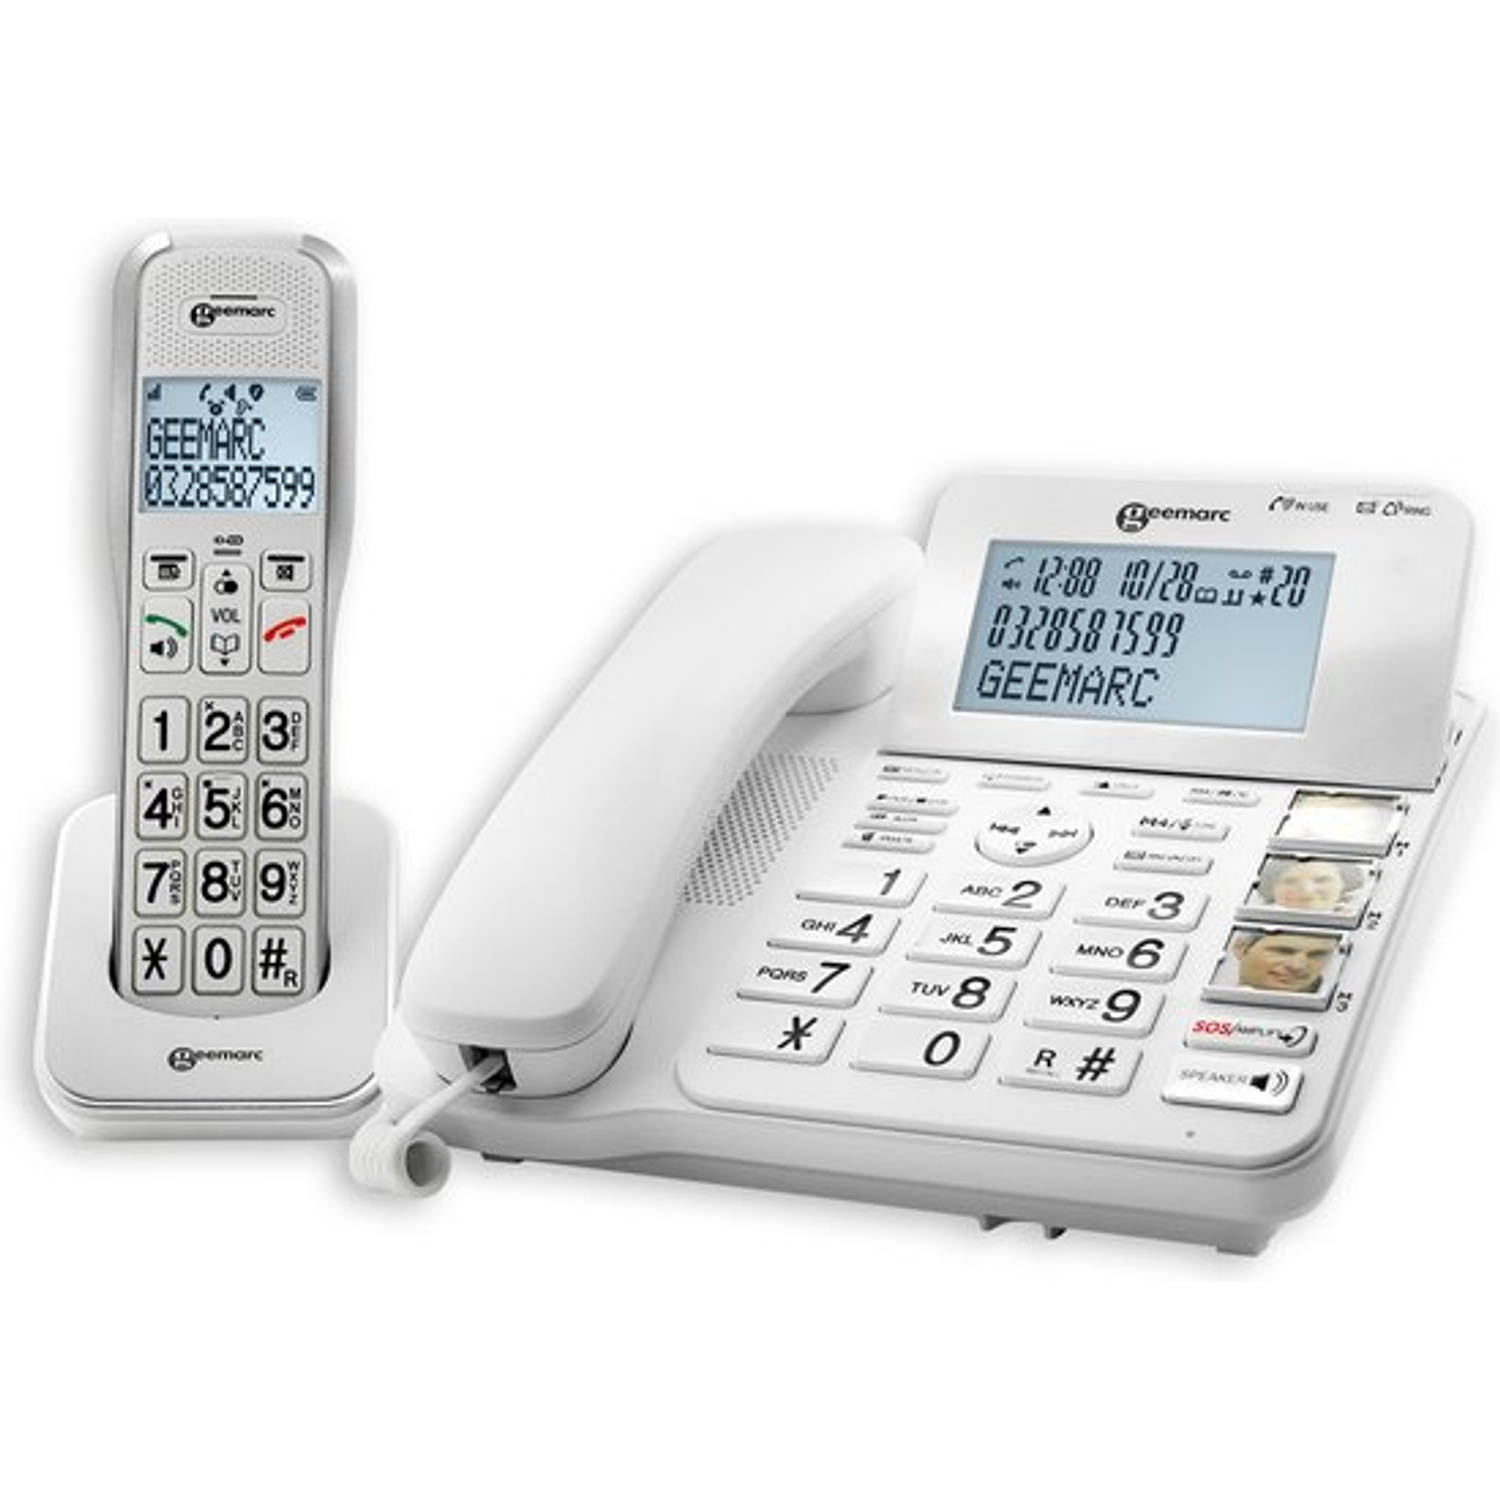 GEEMARC AmpliDECT COMBI595 Combinatie van VASTE TELEFOON en DRAADLOZE TELEFOON - 50 dB GELUIDSVERSTERKING; zeer geschikt voor SLECHTHORENDEN en SLECHTZIENDEN - Antwoordapparaat